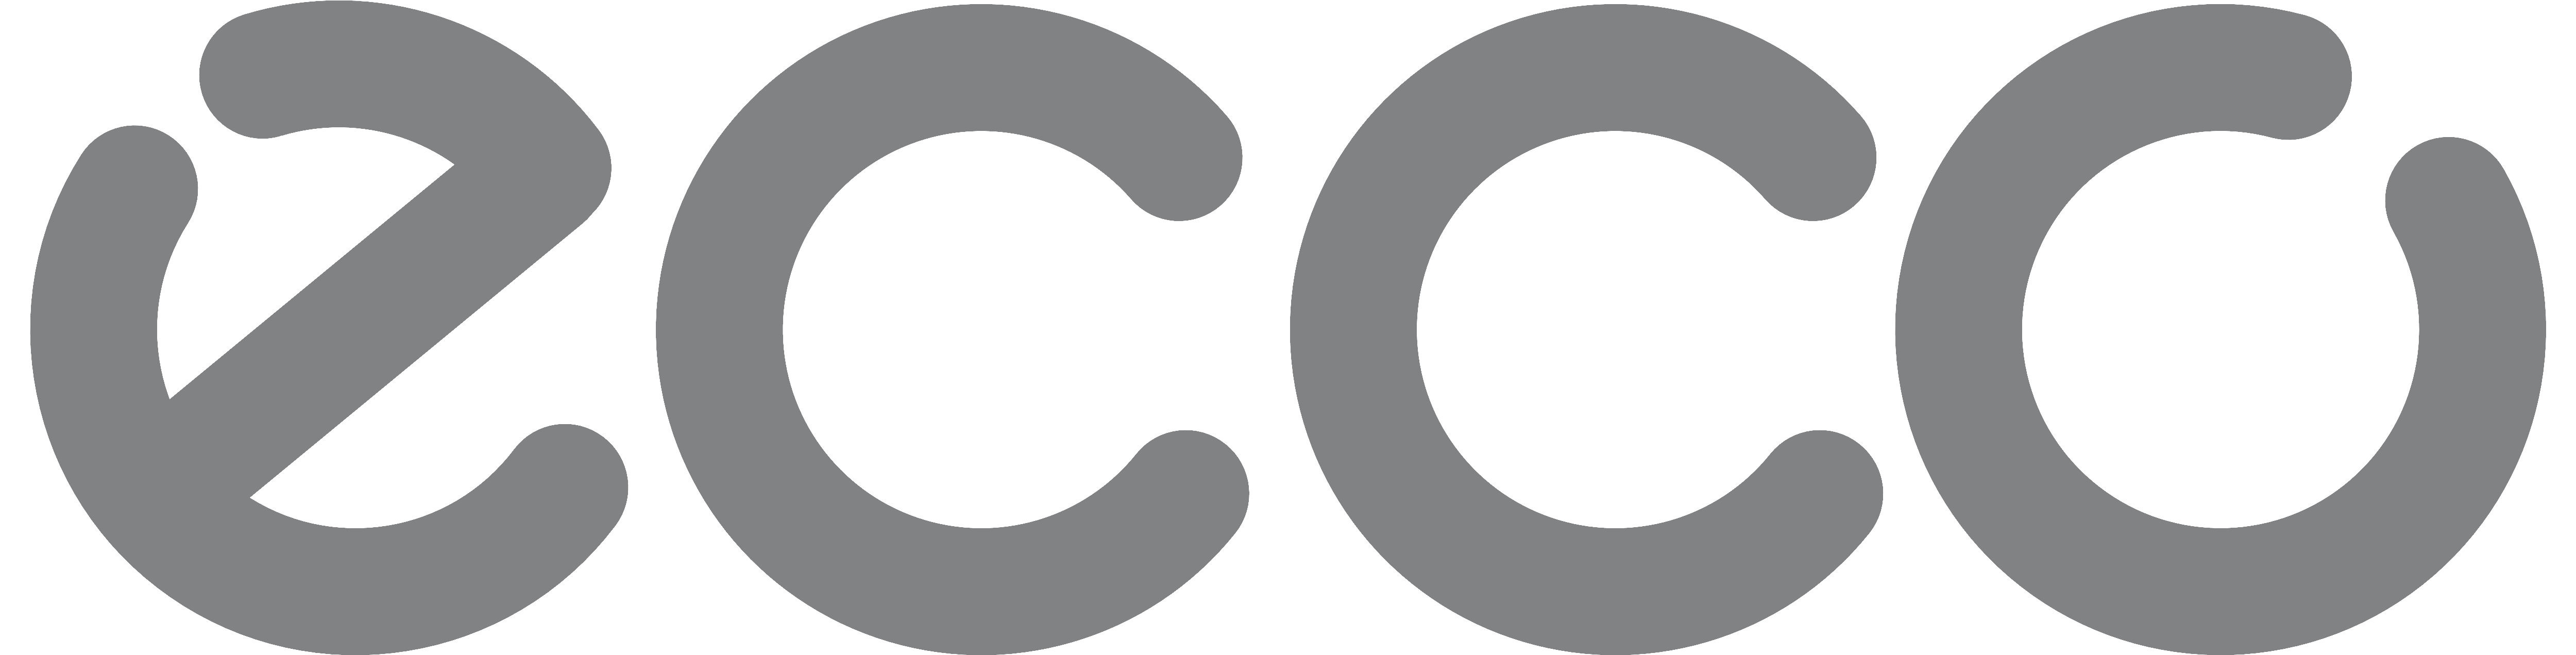 ECCO Brand Value & Company Profile